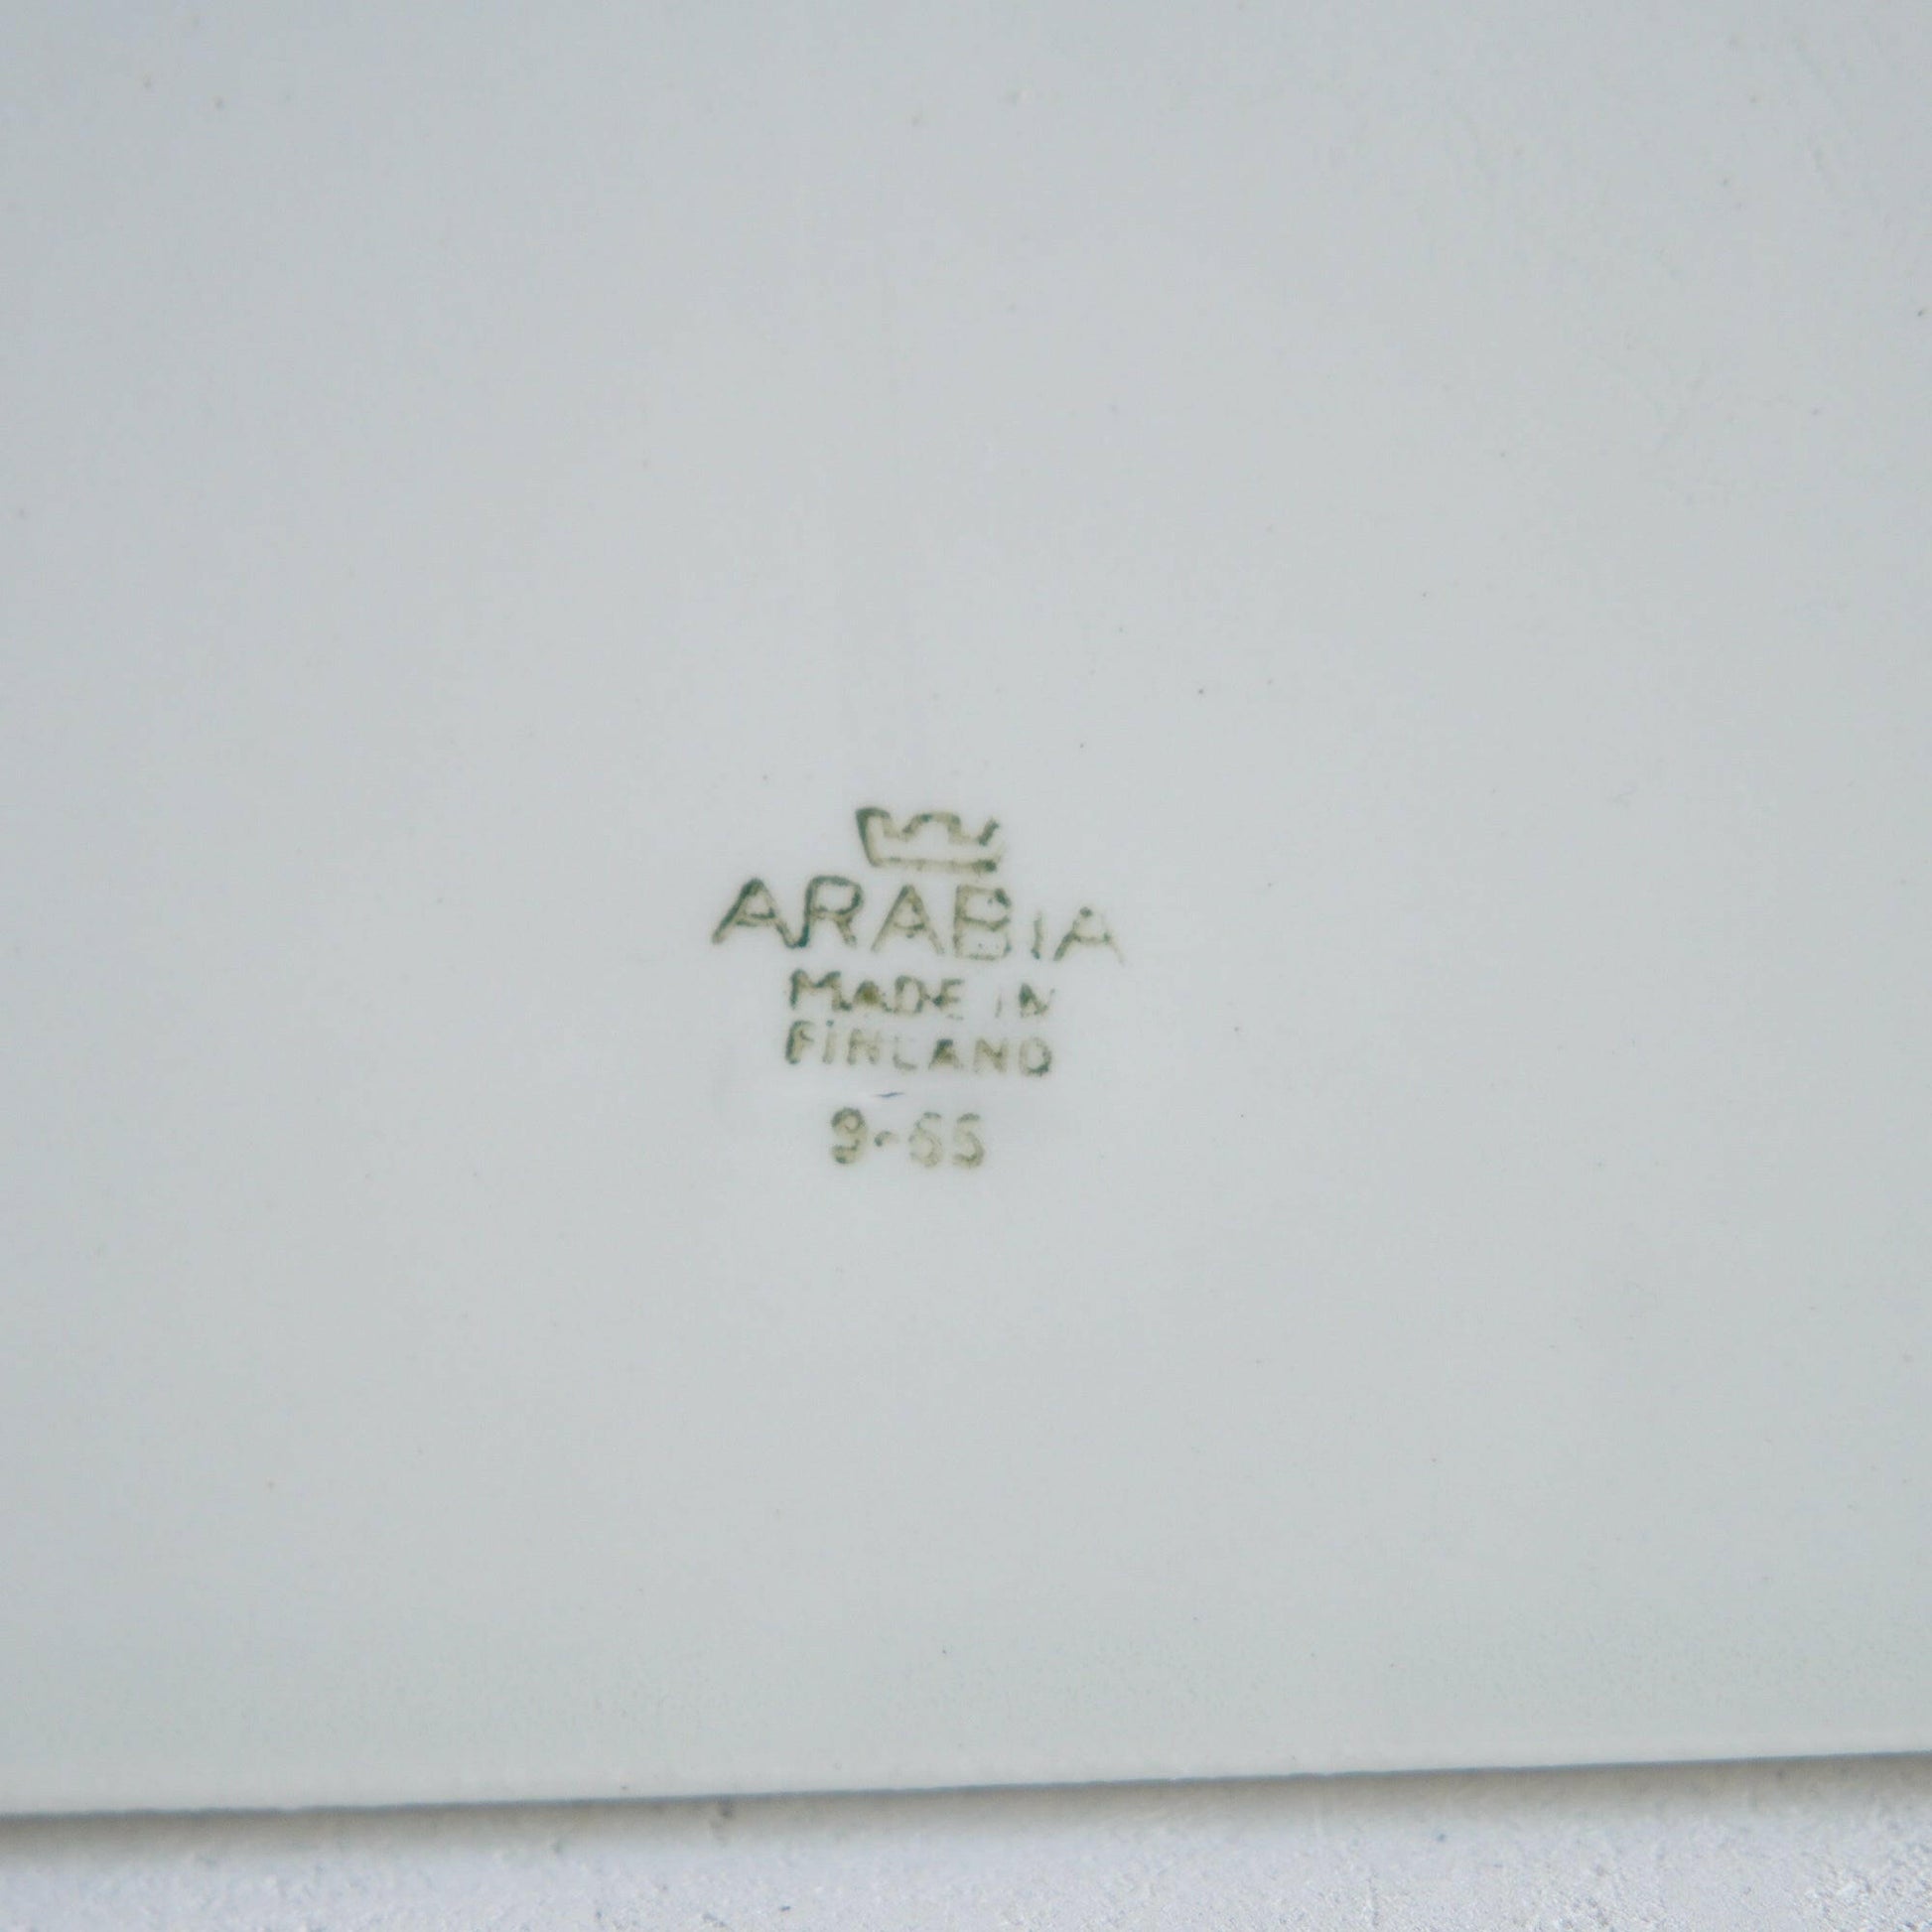 ARABIA シルパ（Sirpa）カッティングボード ライヤ・ウオシッキネン カッティングボード ARABIA   